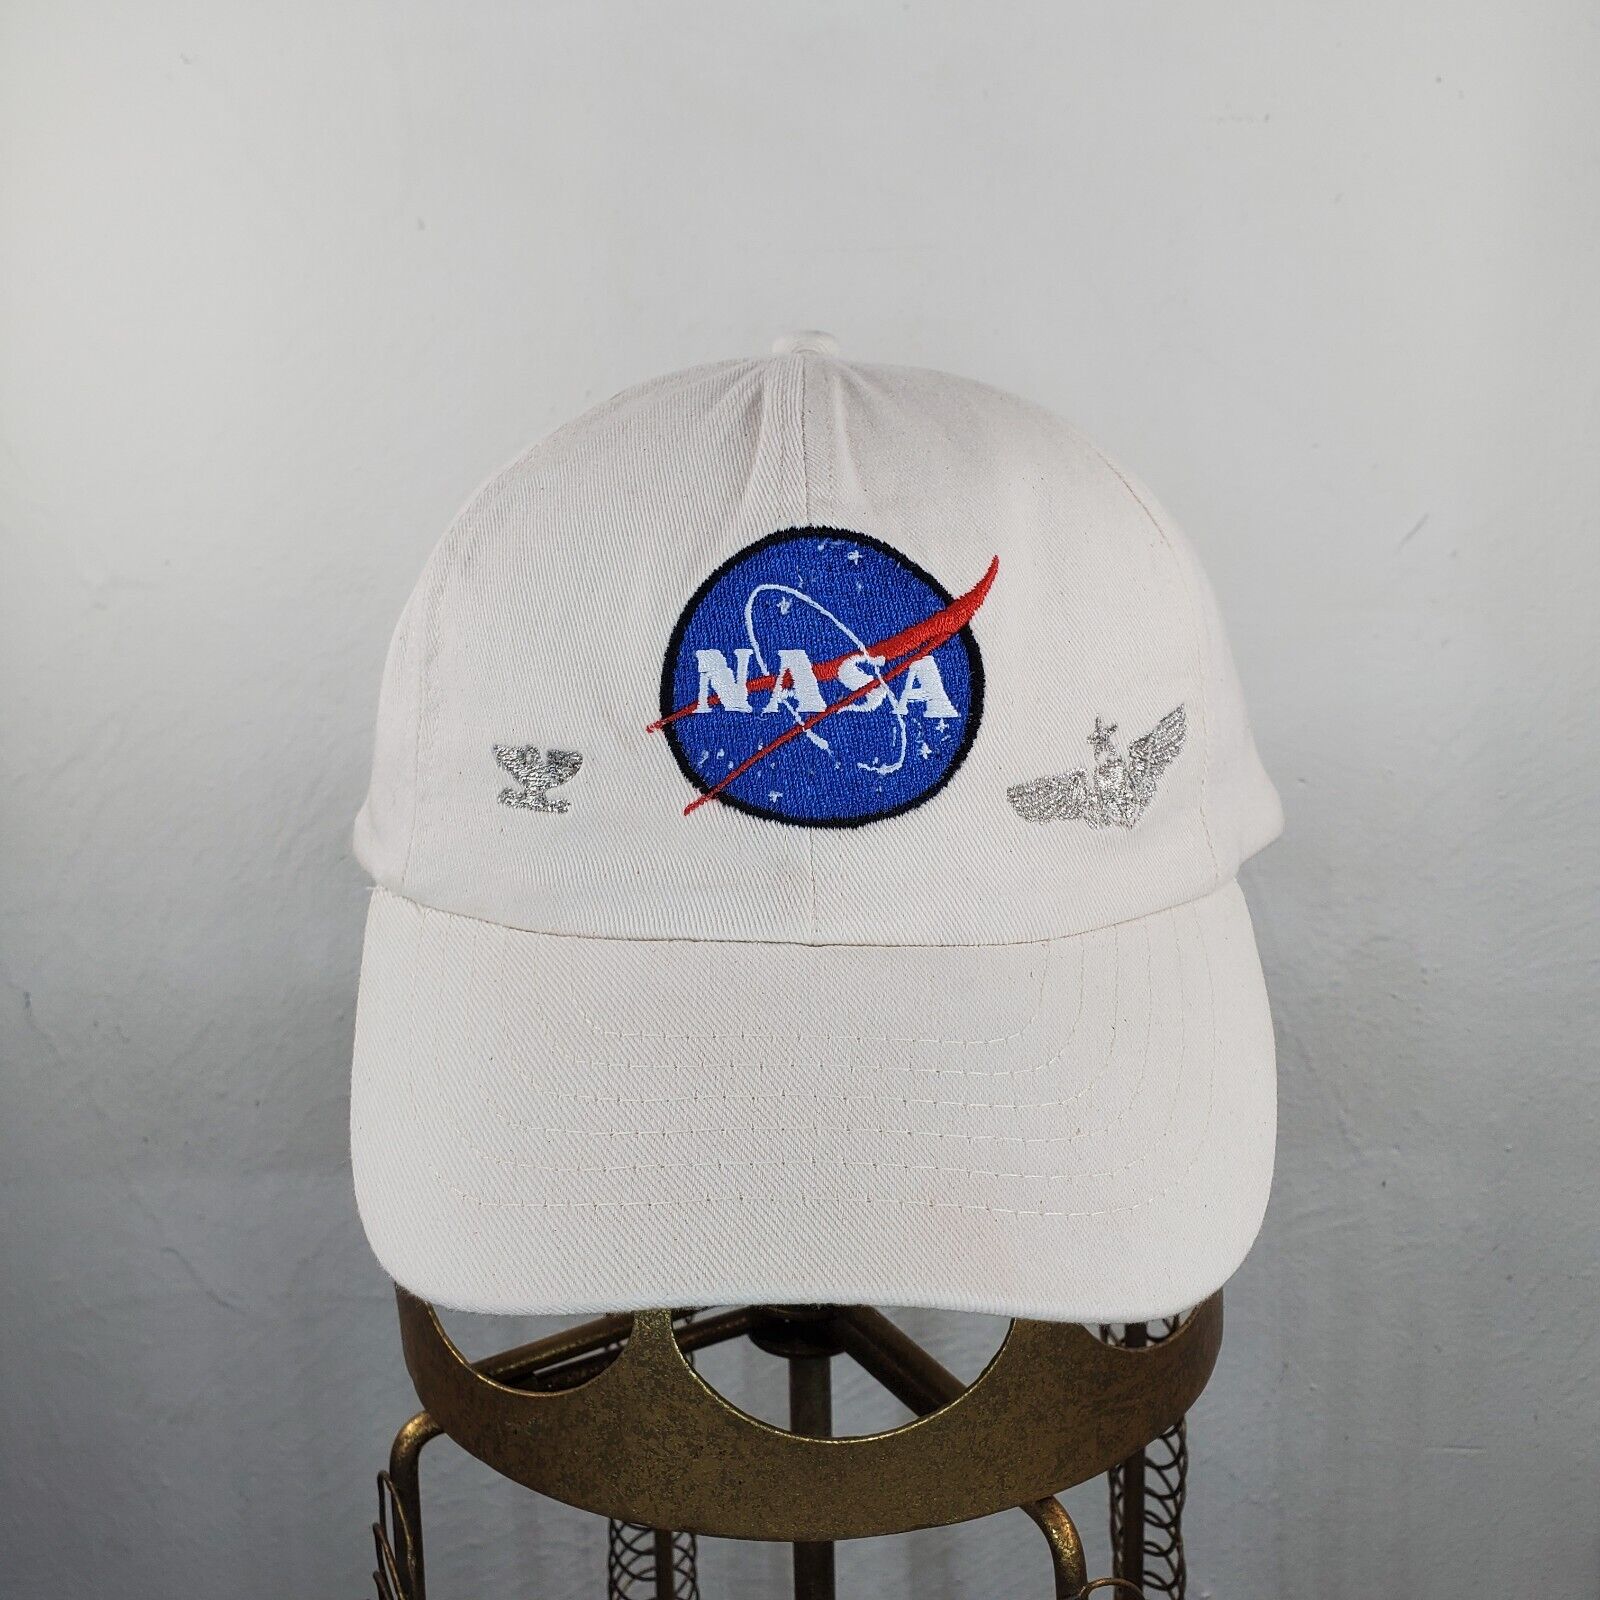 Col. David R. Scott, USAF NASA Ball Cap (unauthenticated)  Apollo 15